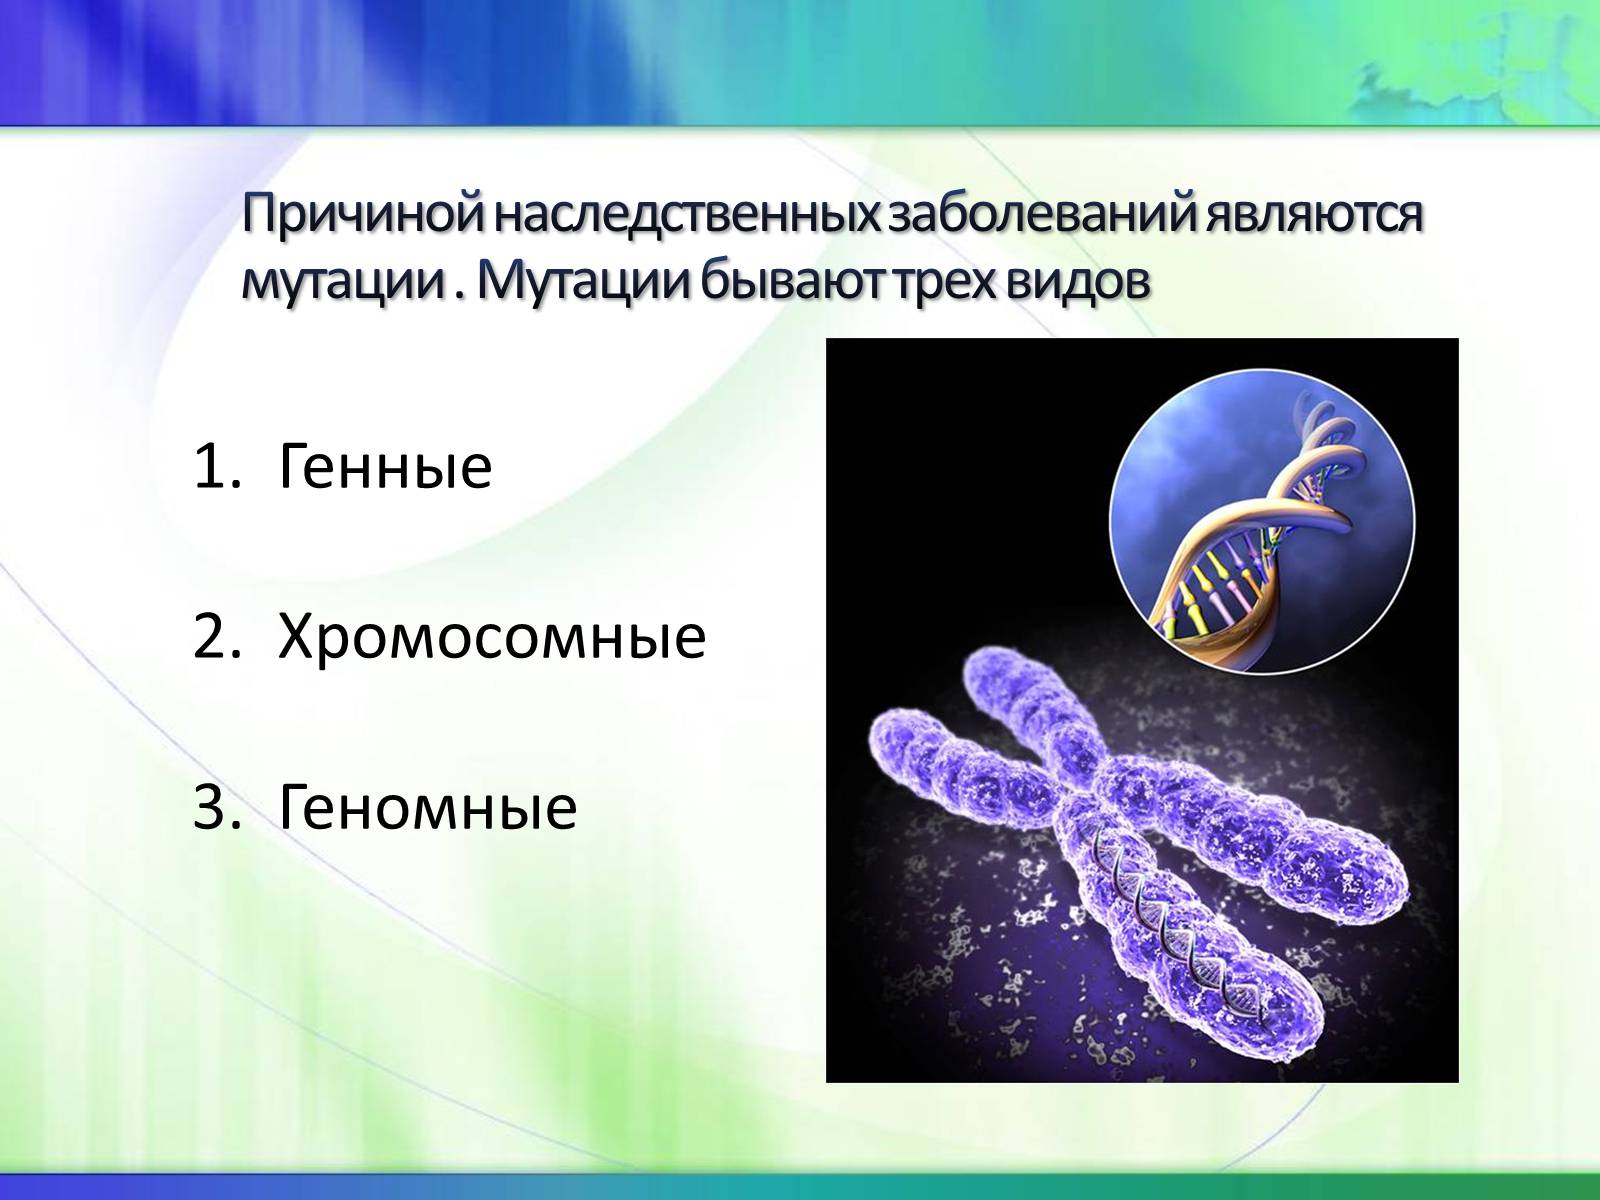 5 наследственных заболеваний человека. Генные геномные и хромосомные болезни. Наследственные болезни и мутации. Хромосомные наследственные болезни. Наследственные заболевания геномные мутации.